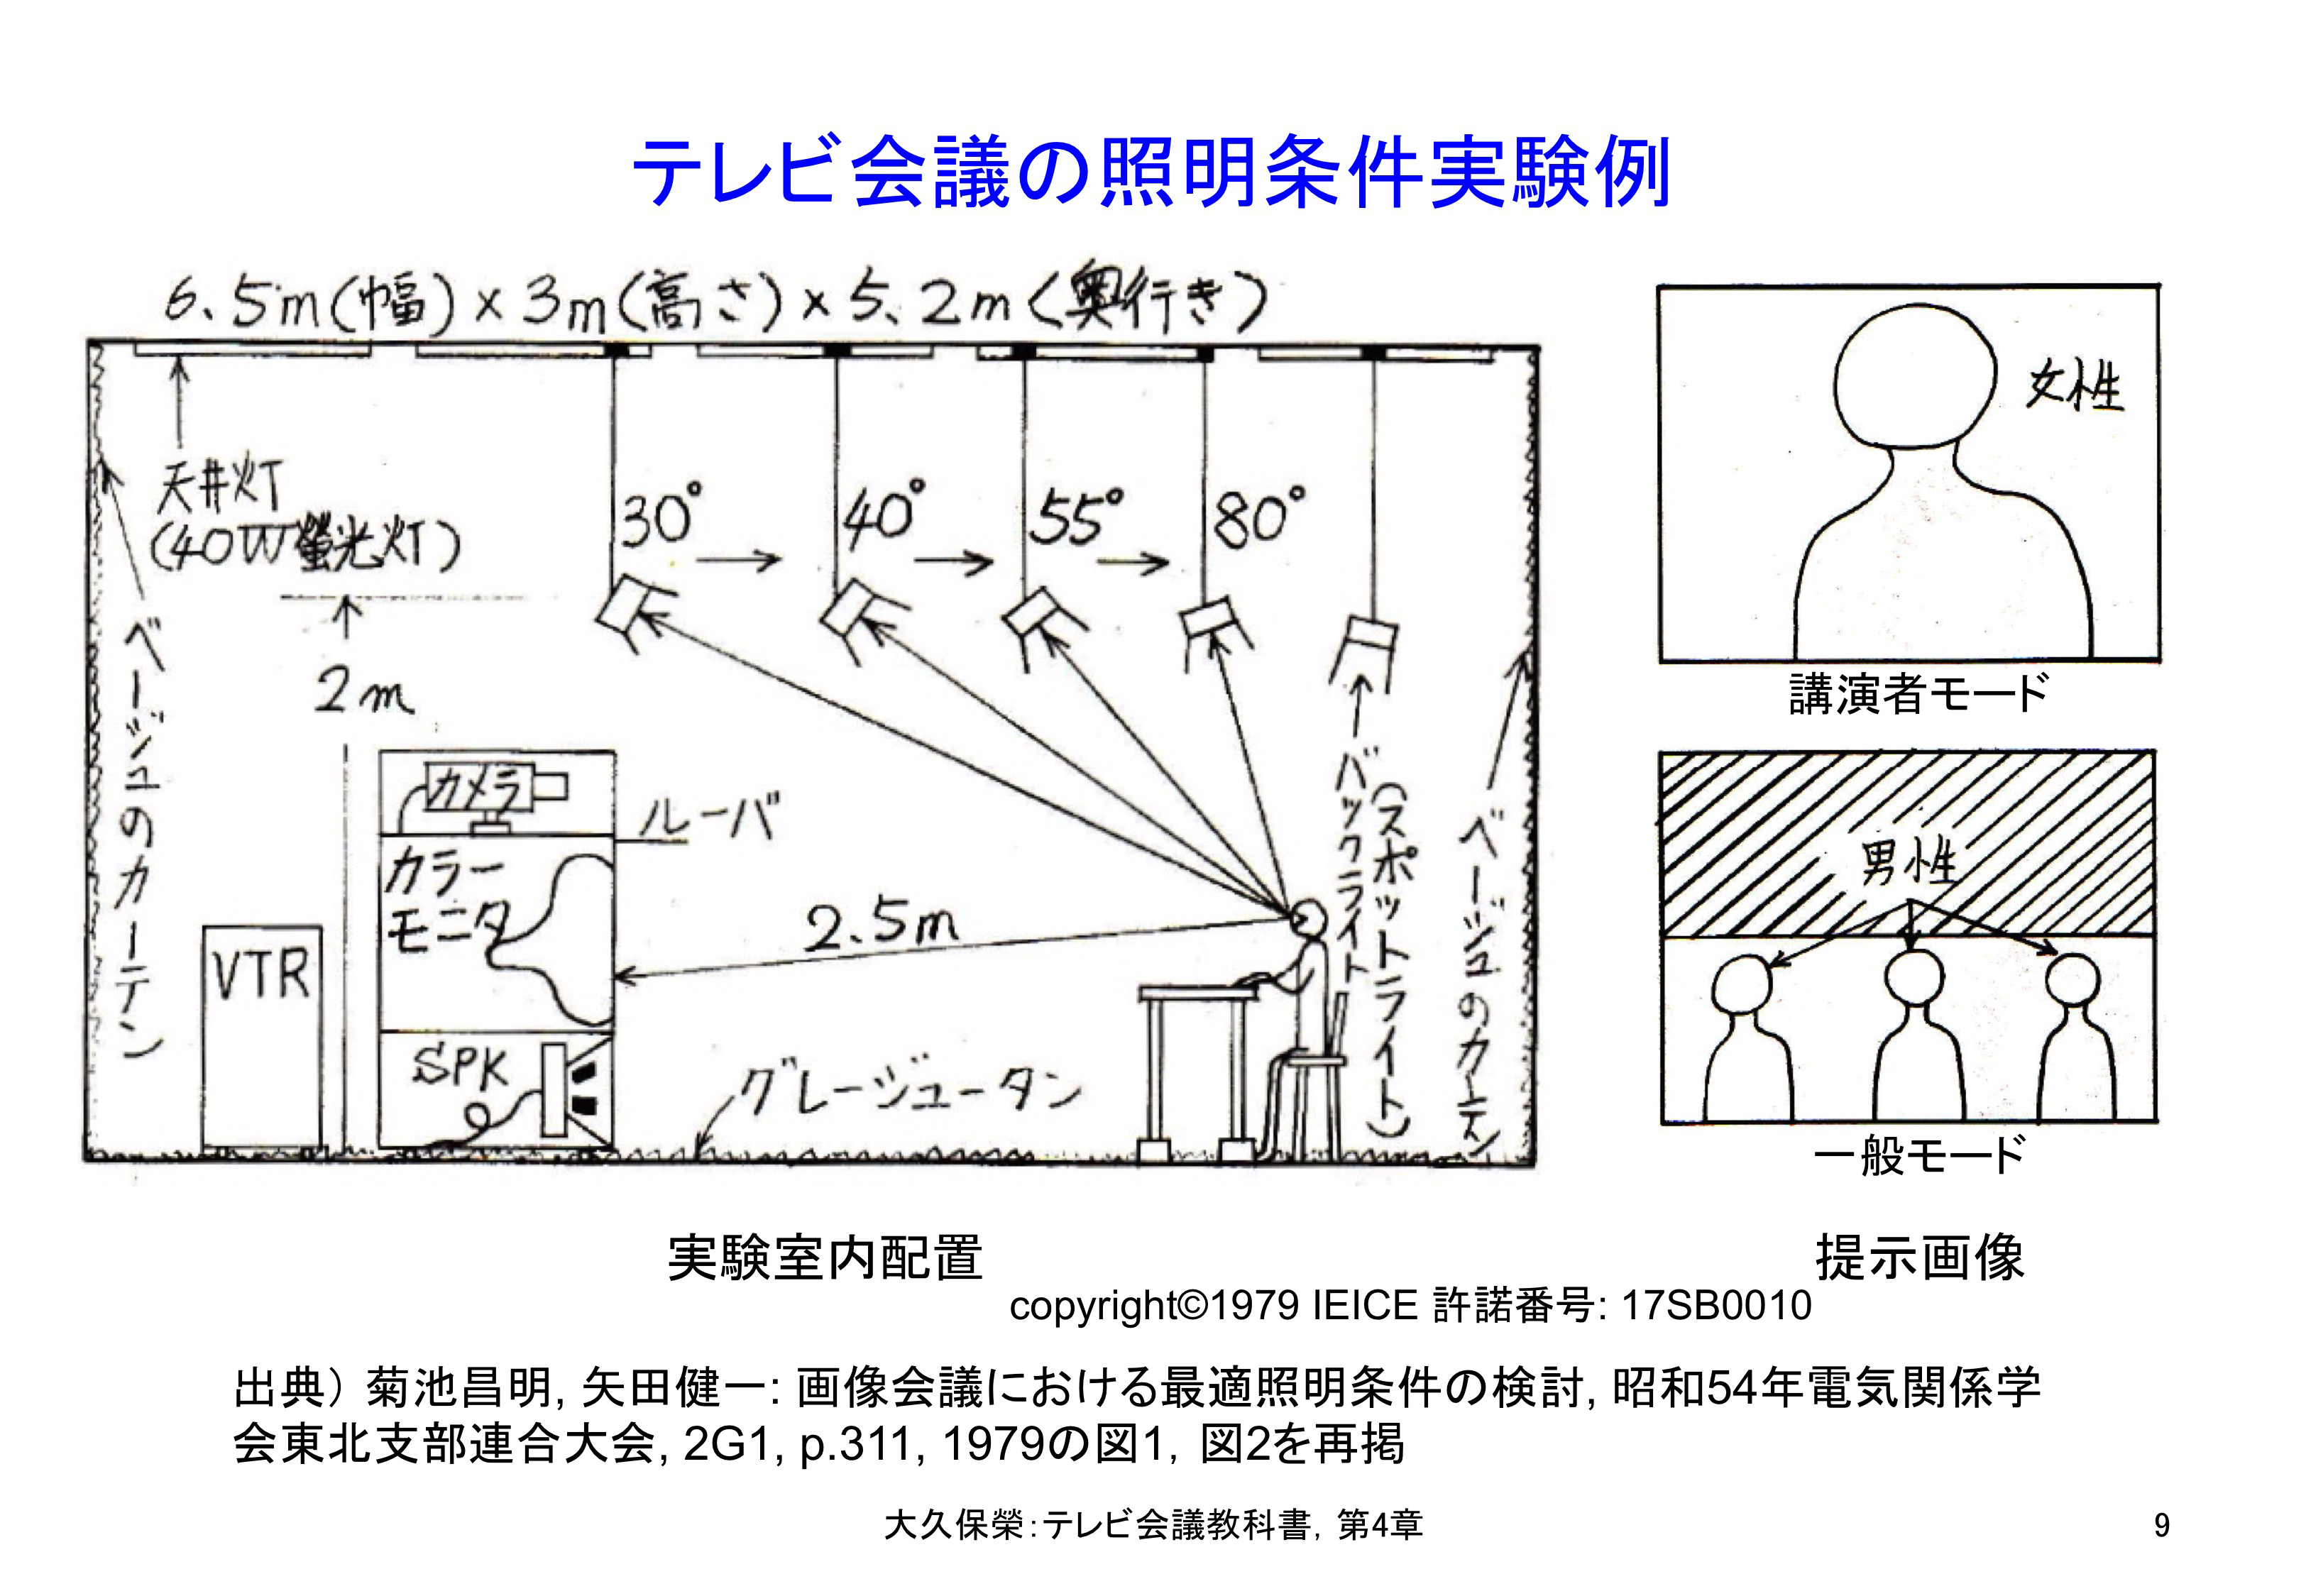 図4-9 テレビ会議の照明条件実験例